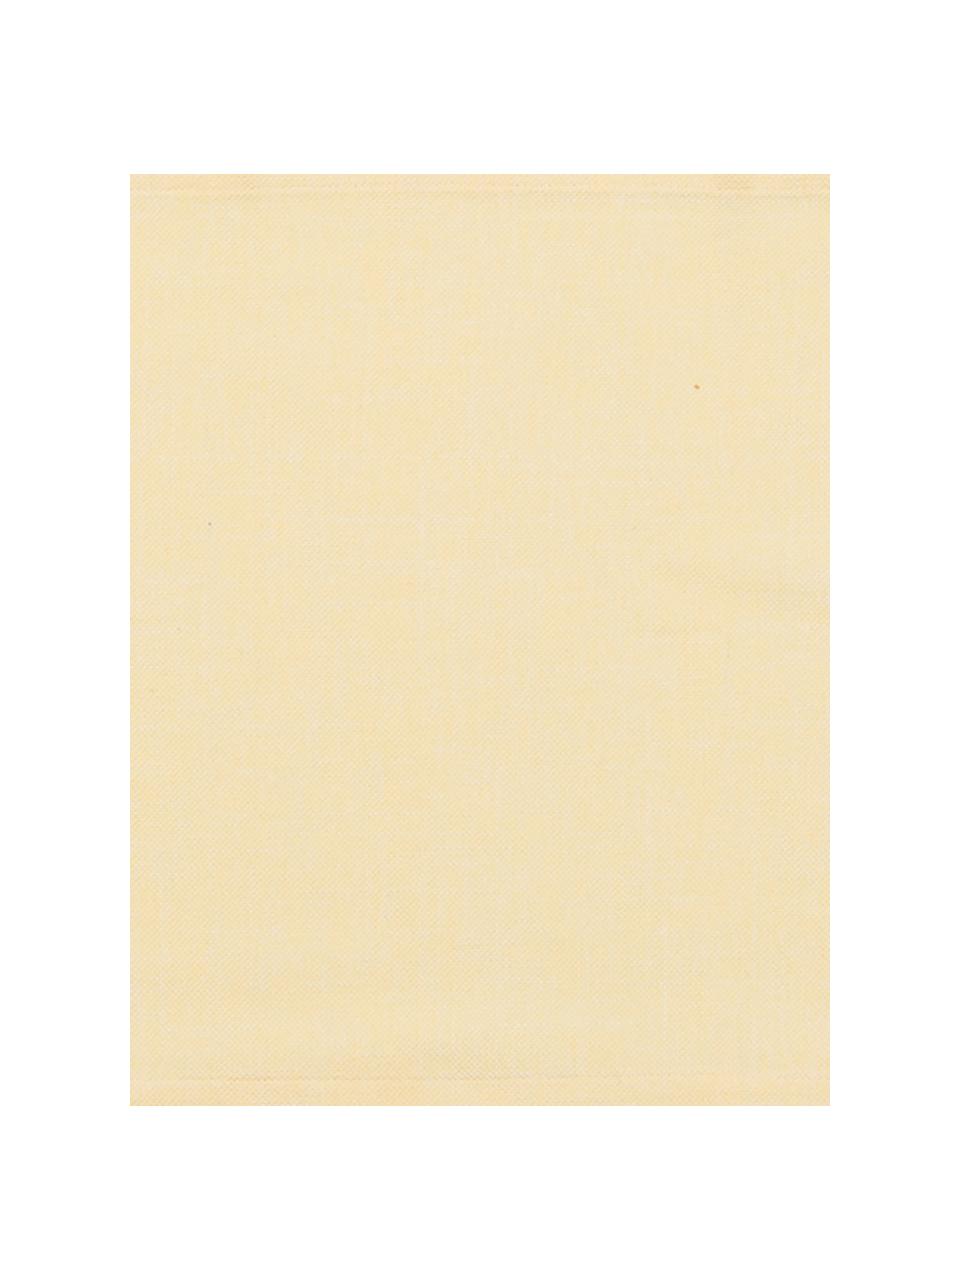 Runner in misto cotone giallo chiaro Riva, Giallo, Larg. 40 x Lung. 150 cm